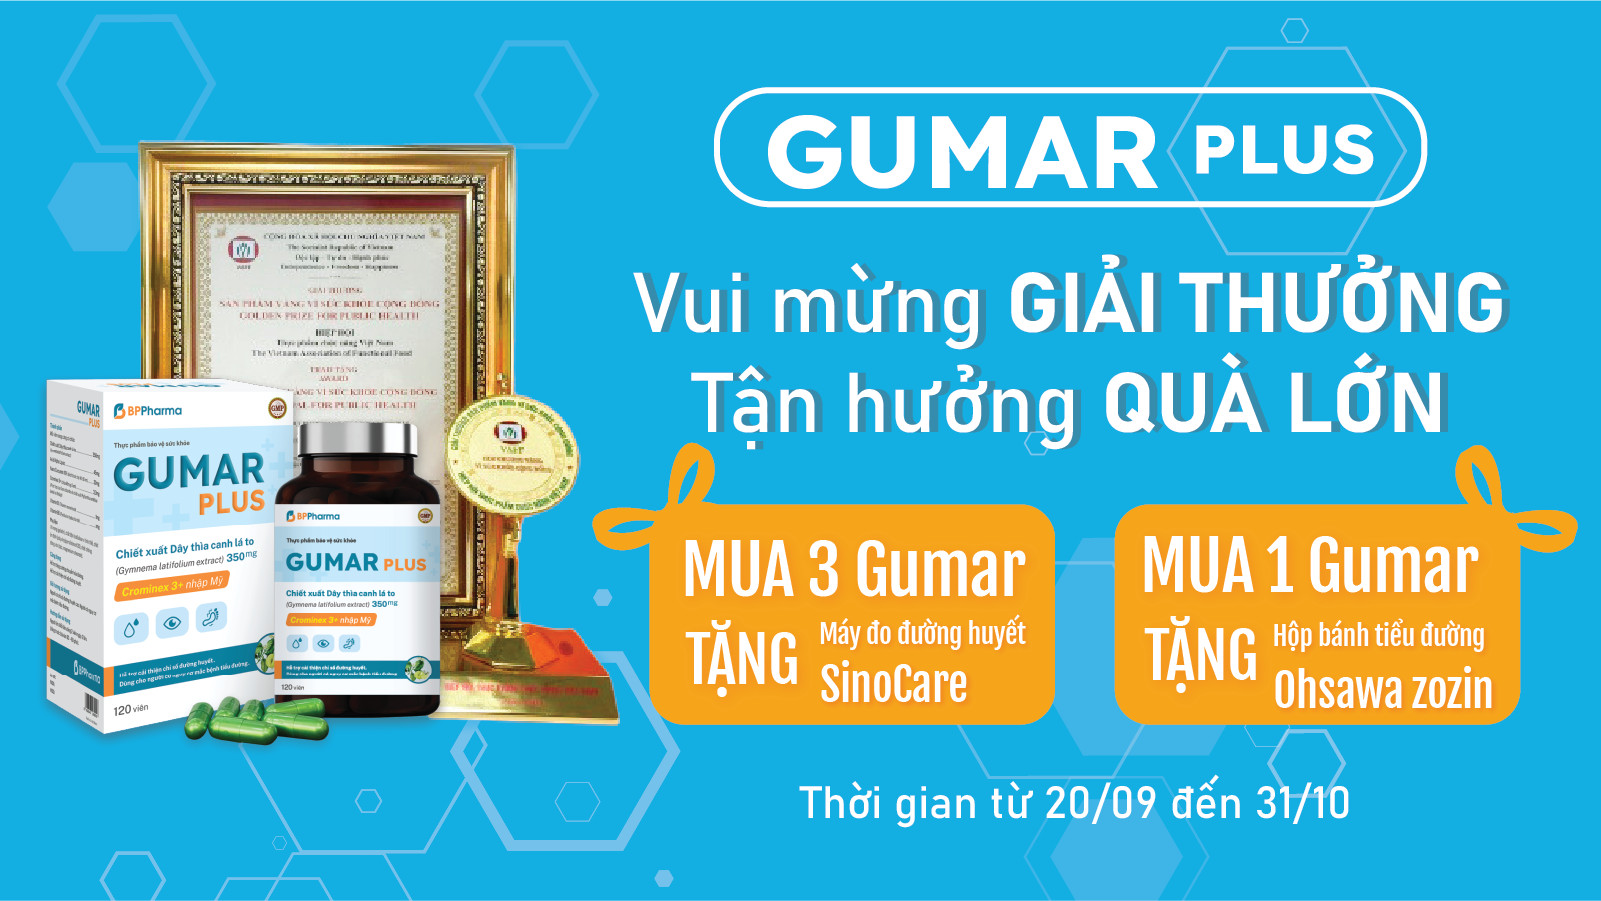 Chương trình “Vui mừng giải thưởng - Tận hưởng quà lớn cùng Gumar Plus” lần đầu có tại Hệ thống Nhà thuốc Pharmart